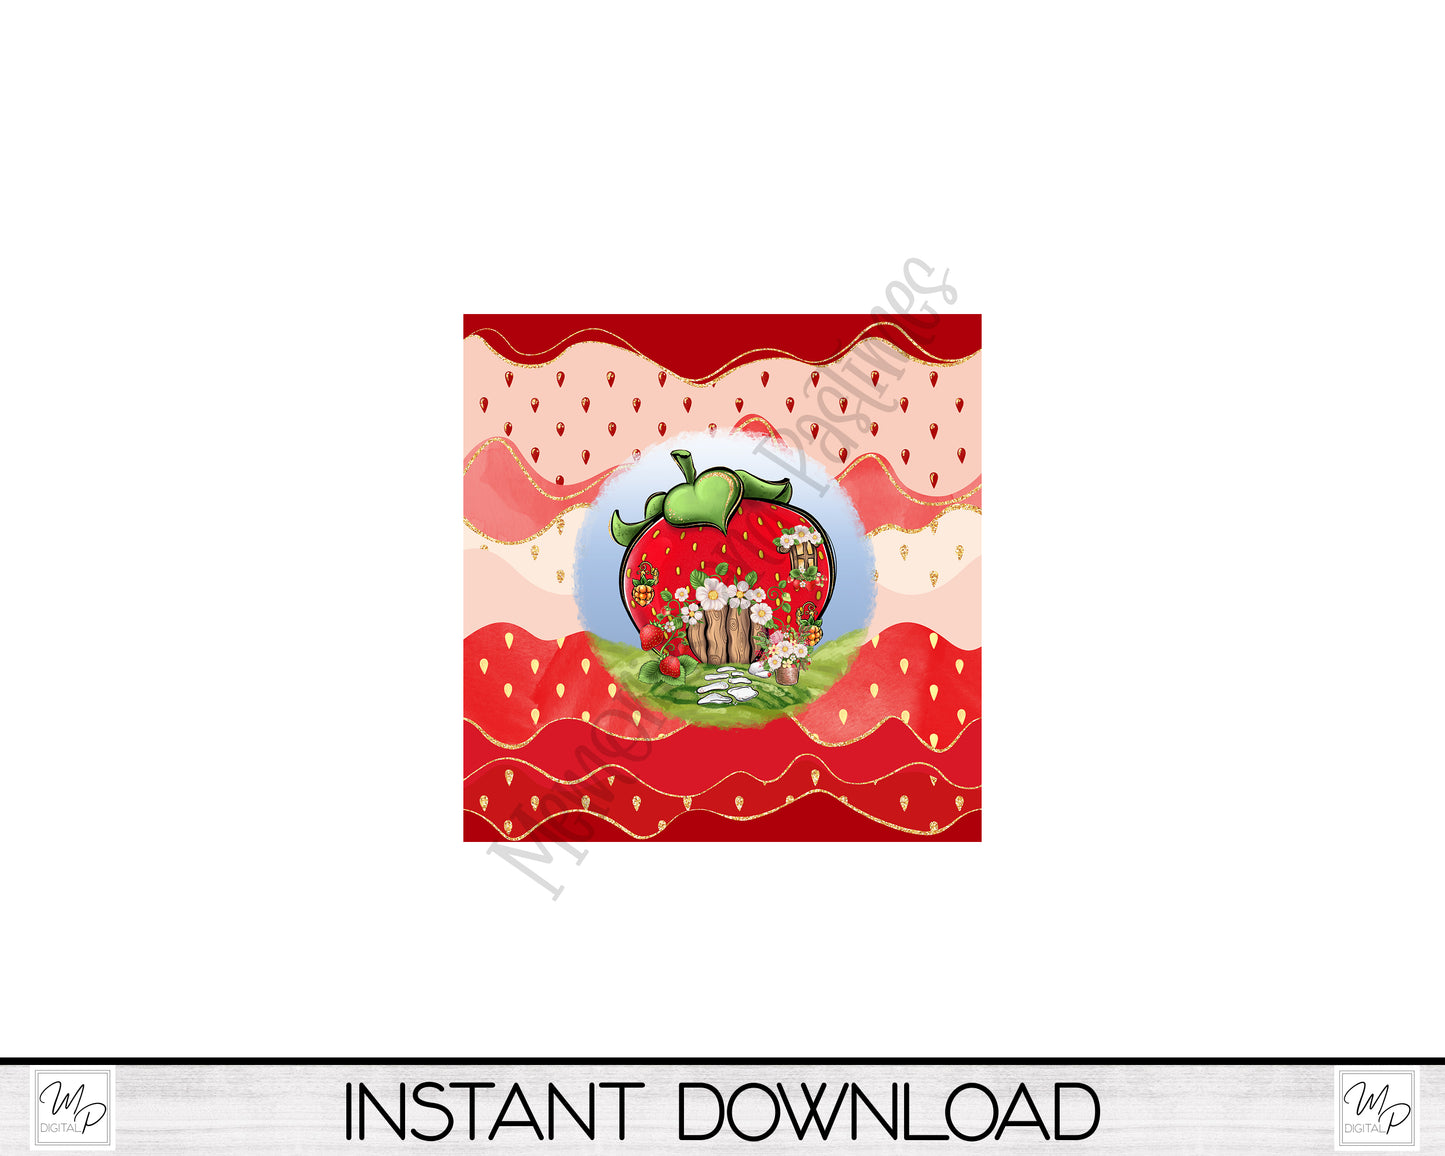 Strawberry Garden Wind Spinner PNG Design for Sublimation, Digital Download